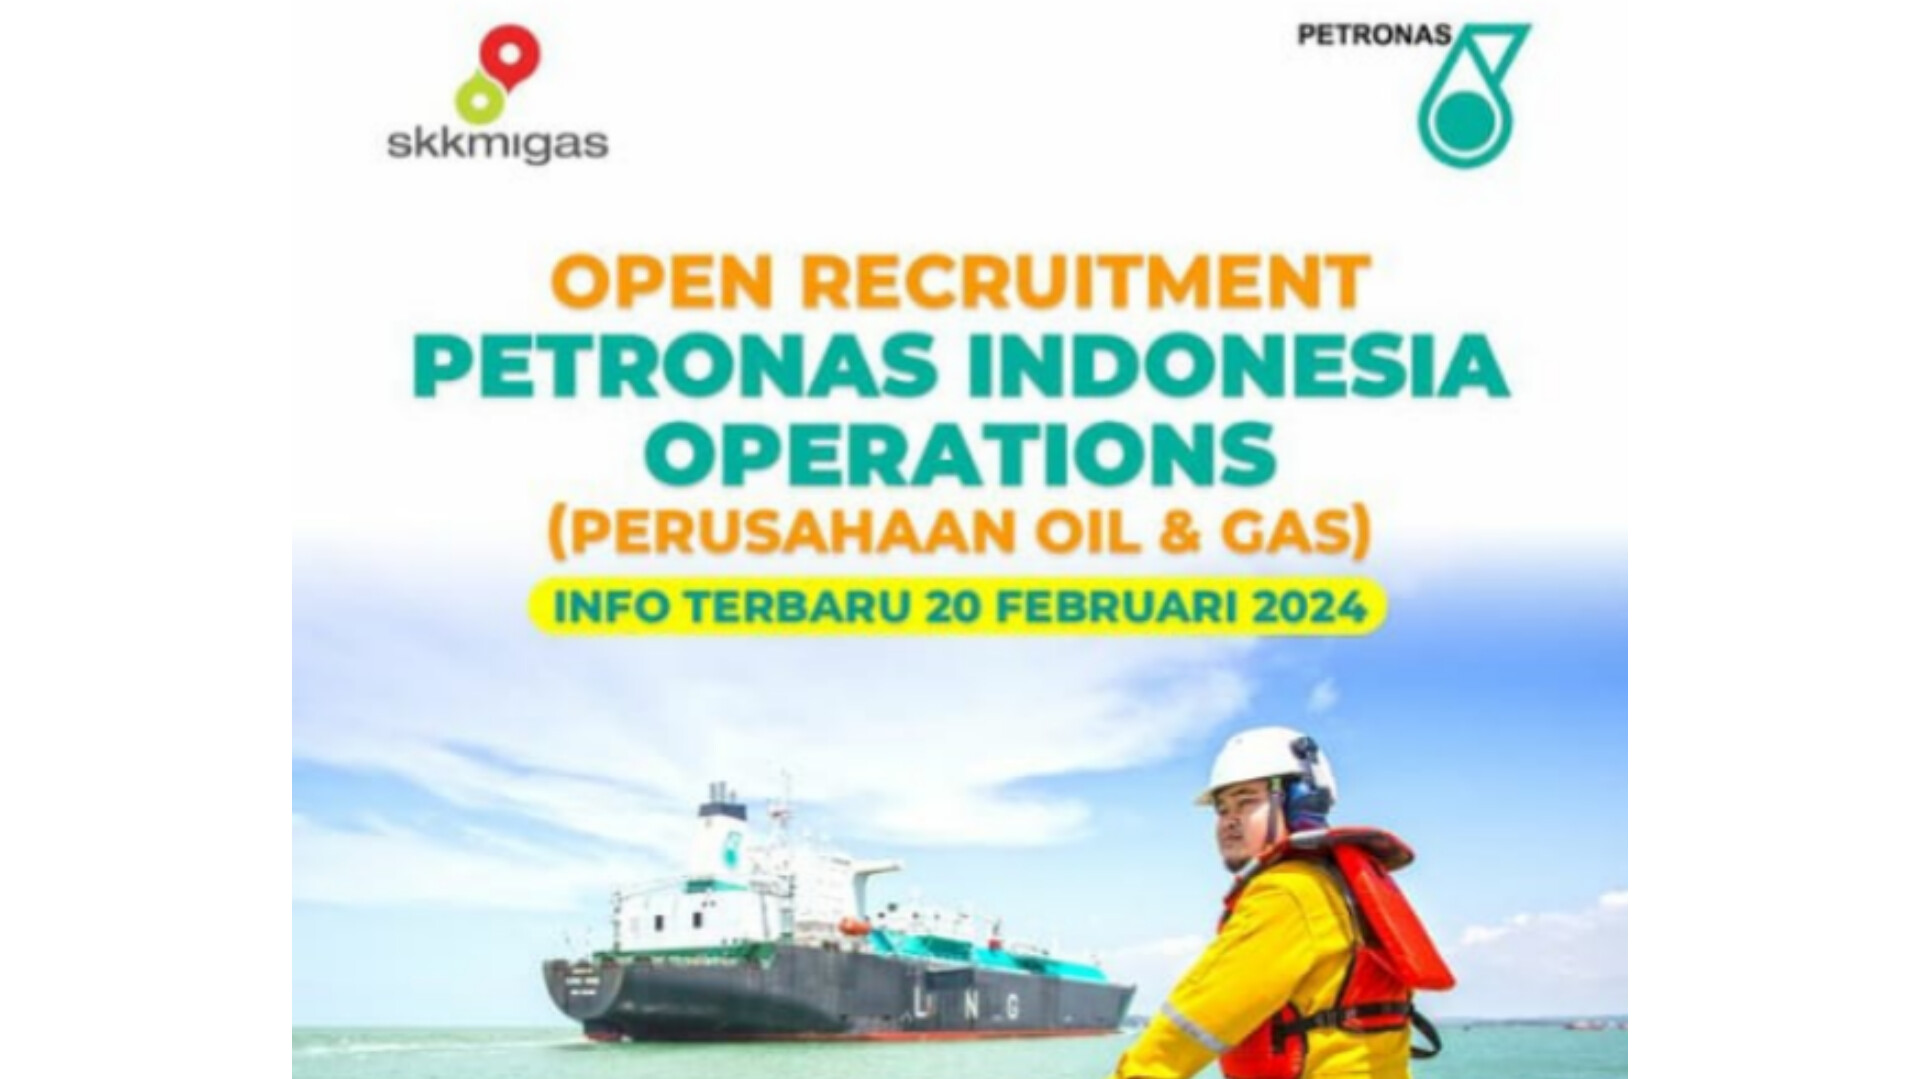 Perusahaan Oil dan Gas Petronas Indonesia Buka Lowongan Kerja untuk 3 Posisi, Cek Persyaratannya...